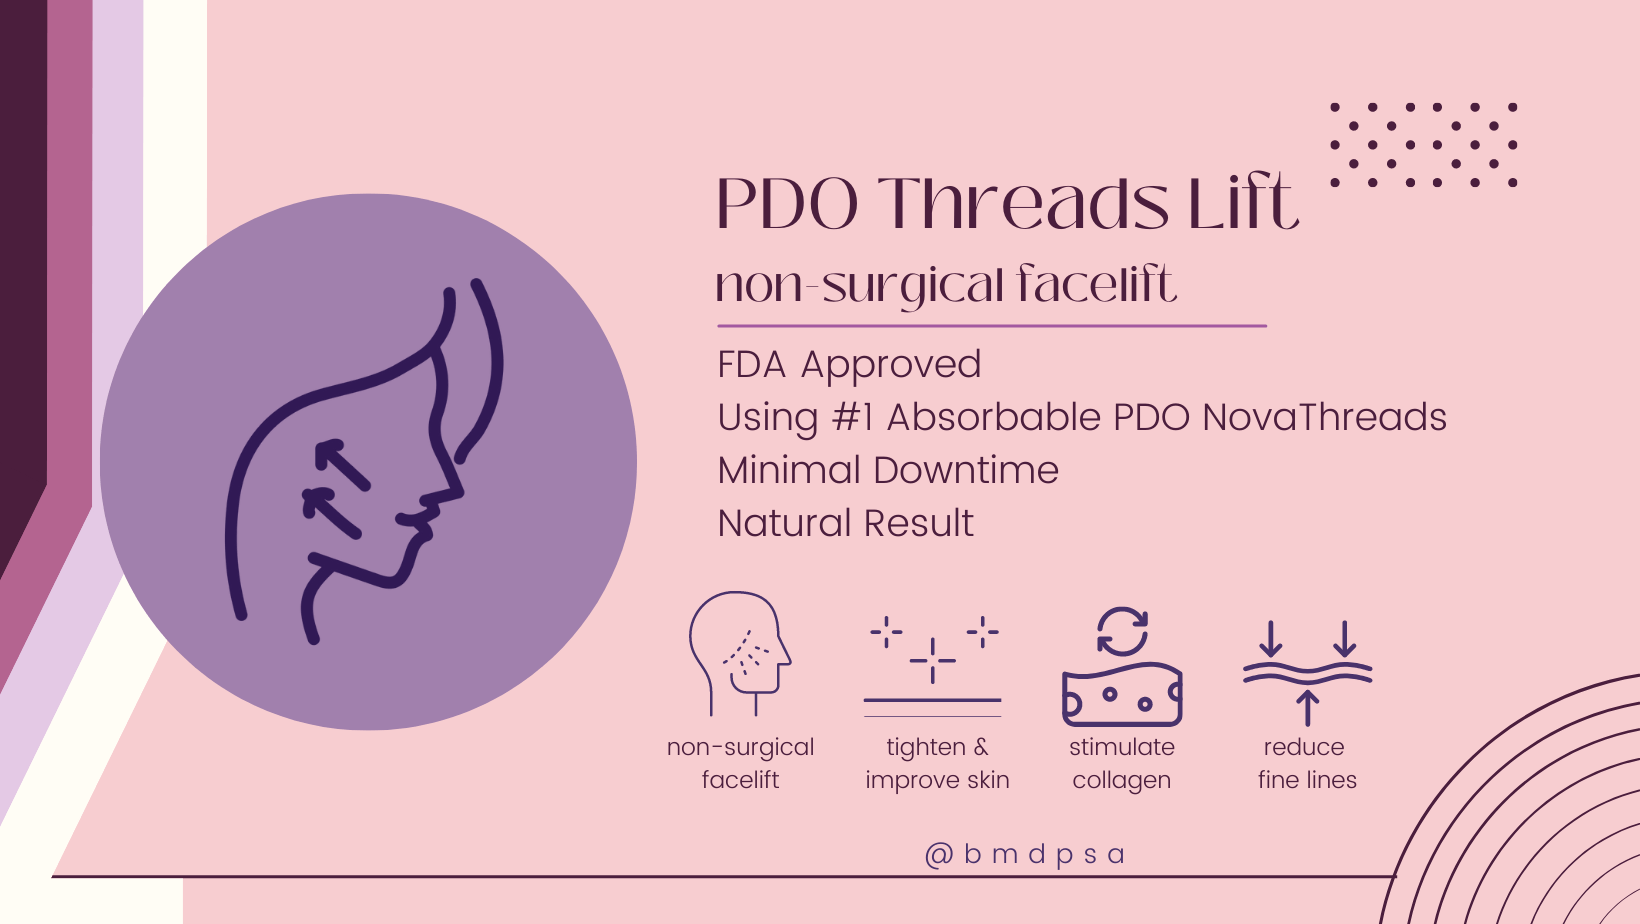 PDO Threads Lift - Non Surgical Facelift